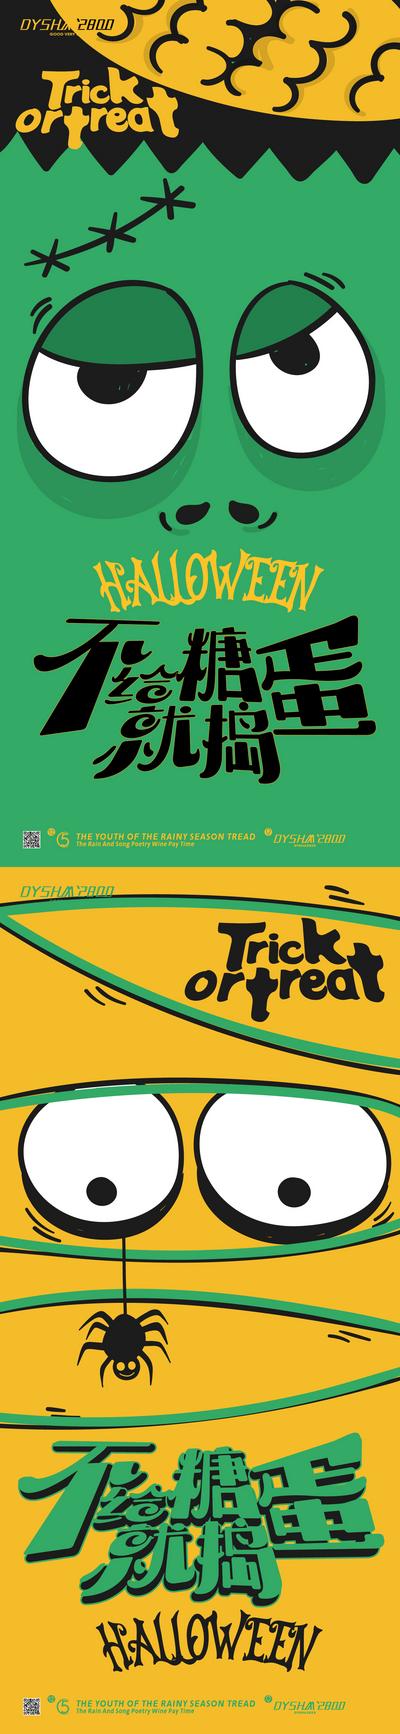 南门网 广告 海报 节日 万圣节 恐怖 恶搞 蜘蛛 蝙蝠 系列 表情 创意